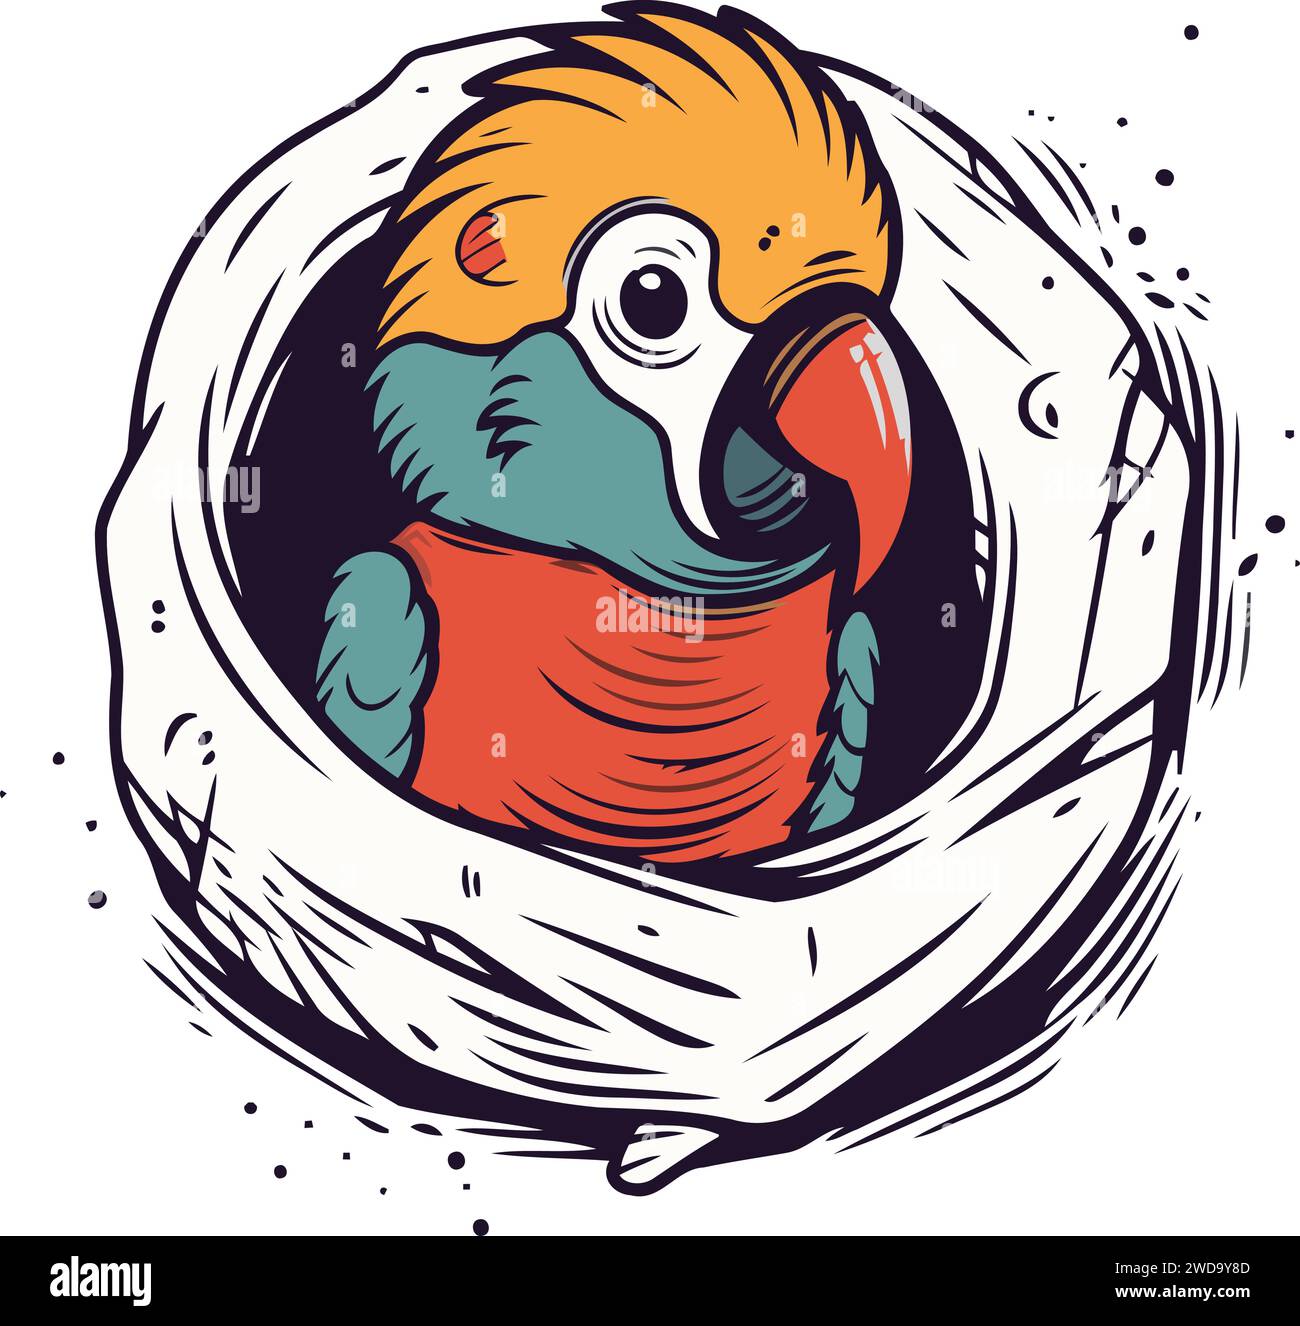 Mignon perroquet dans le nid. Illustration vectorielle dessinée à la main. Illustration de Vecteur